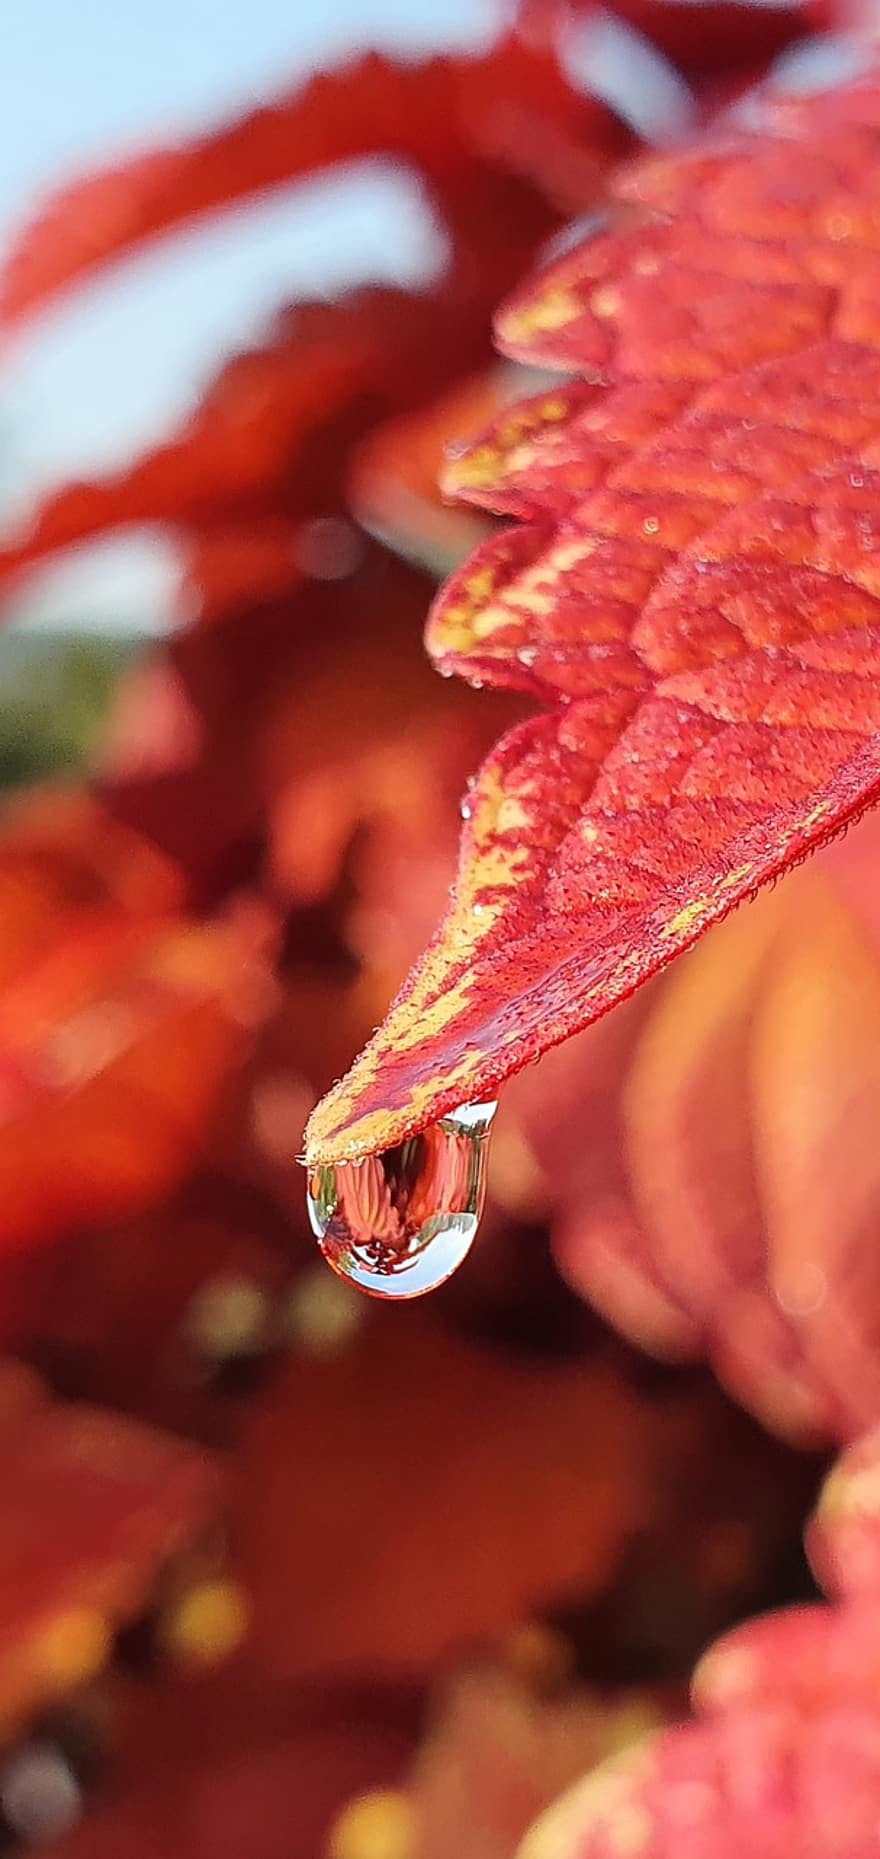 葉、赤い葉、滴下、水滴、秋の葉、紅葉、工場、閉じる、自然